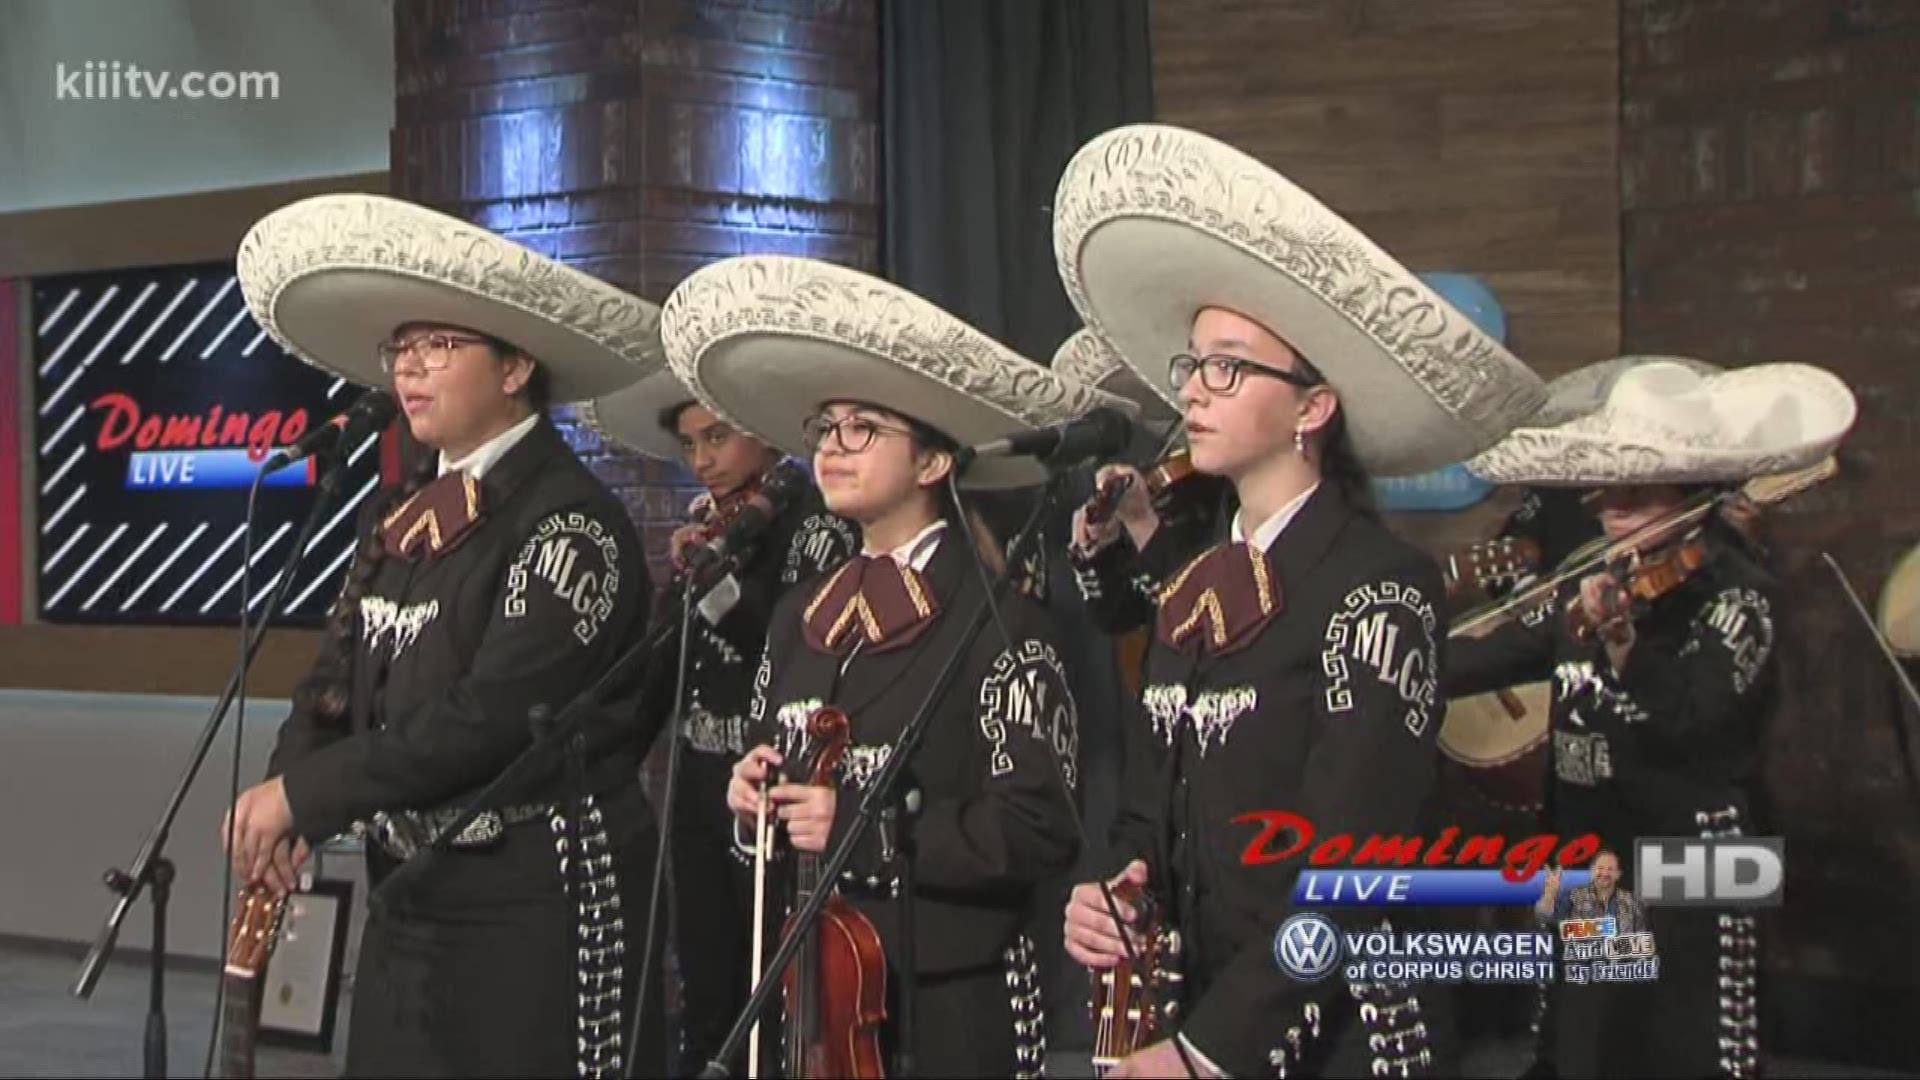 Tuloso Midway Middle School Mariachi performing "Las Llaves de Mi Alma" on Domingo Live.